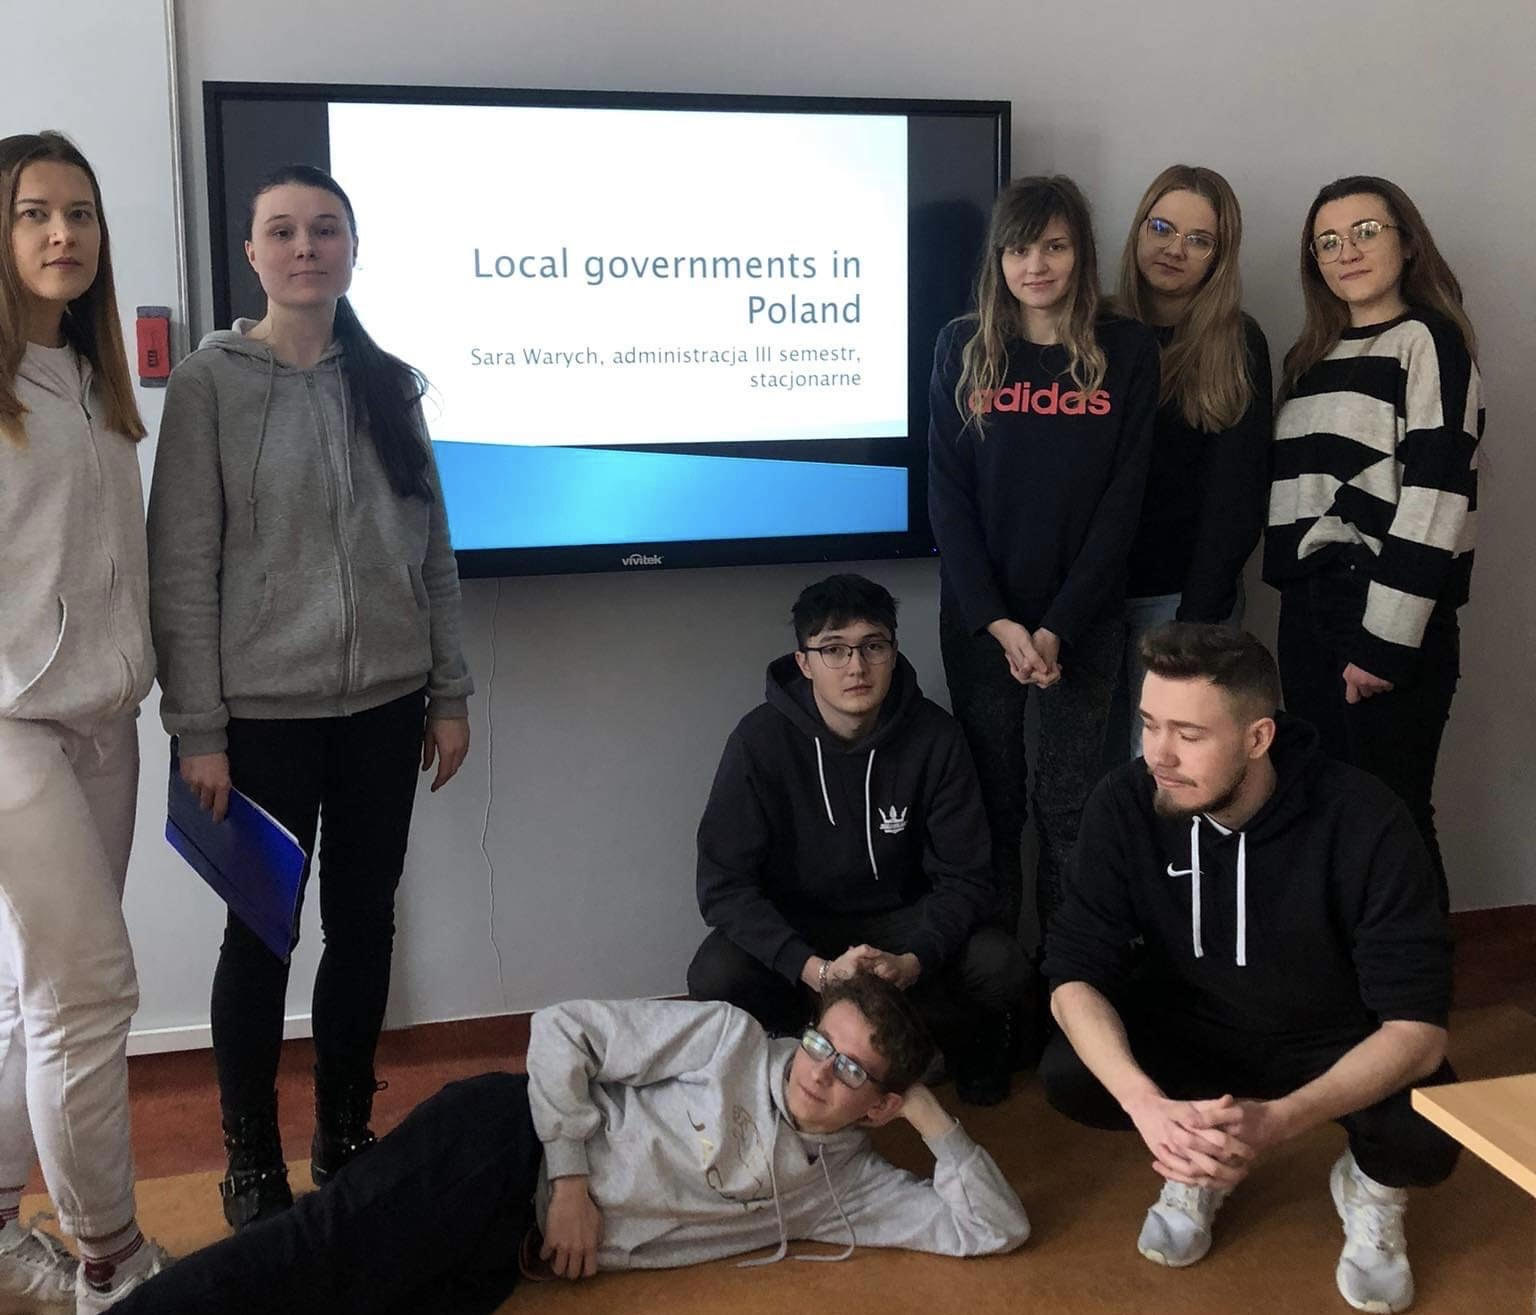 Grupa ośmiu młodych ludzi stoi, klęczy lub leży przed tablicą interaktywną. Na tablicy wyświetlony jest napis: Local governments in Poland, Sara Warych, administracja III semestr, stacjonarne.